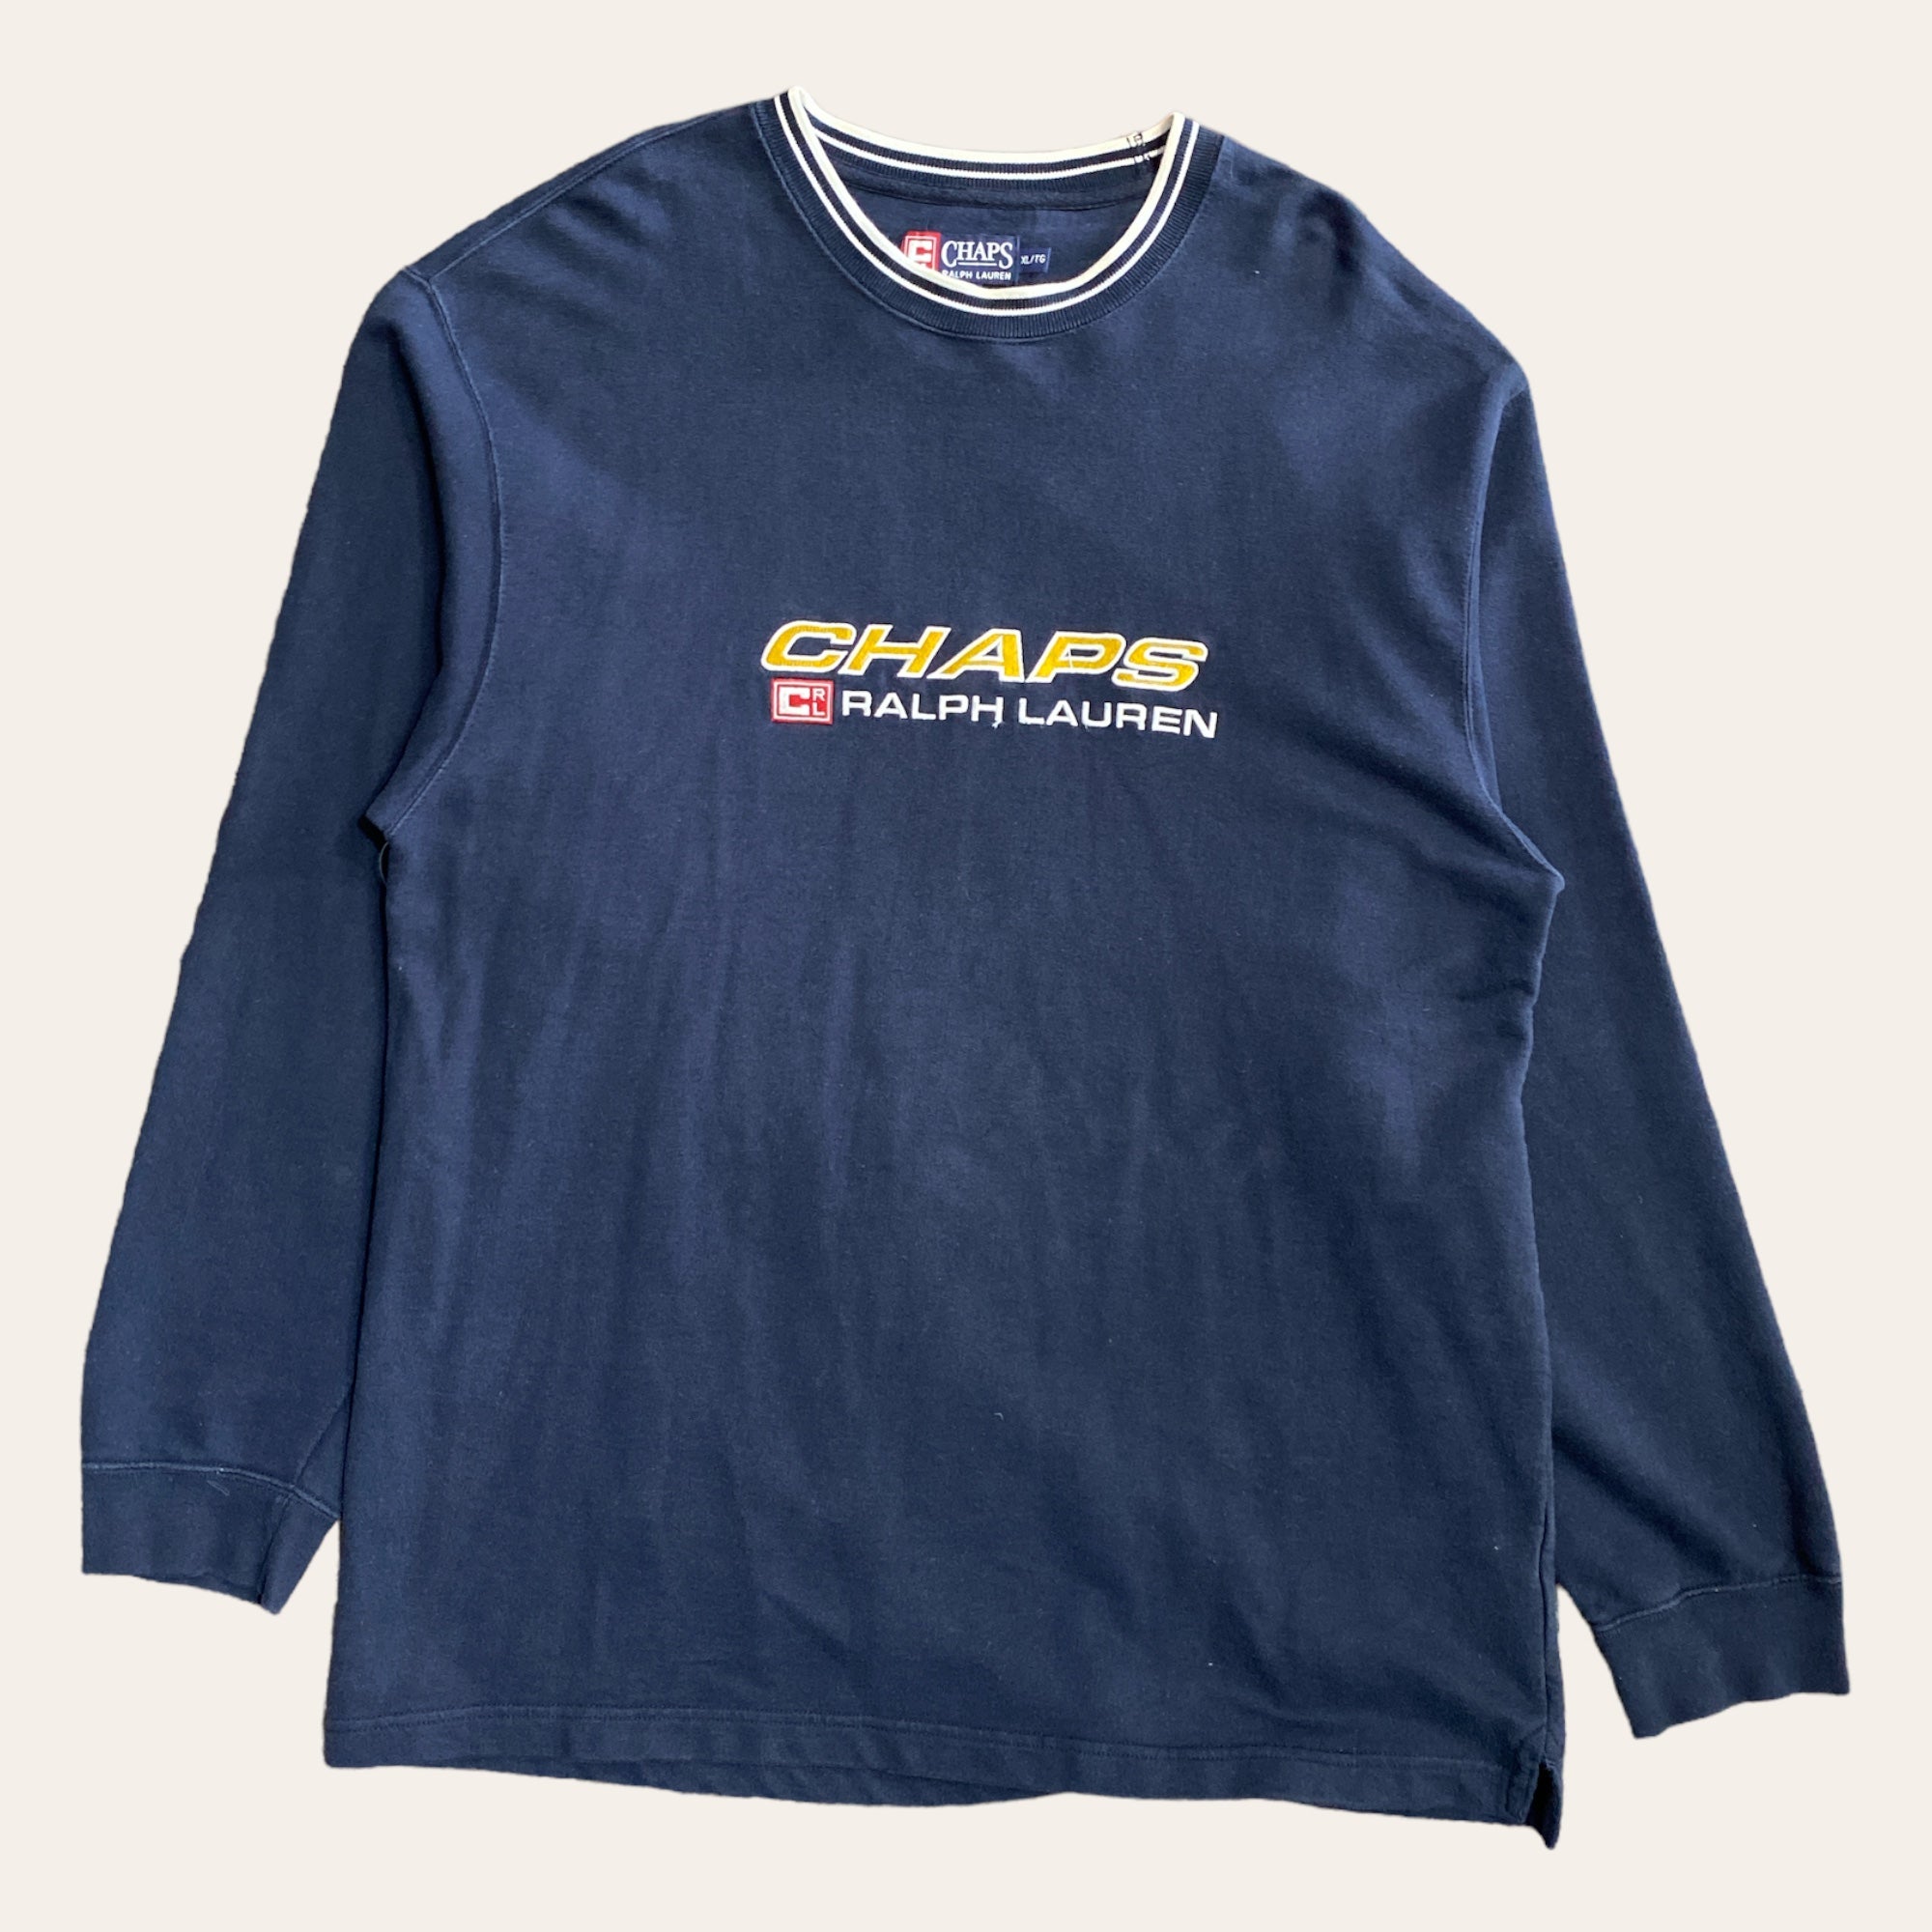 Vintage Chaps Ralph Lauren Sweater Size XL